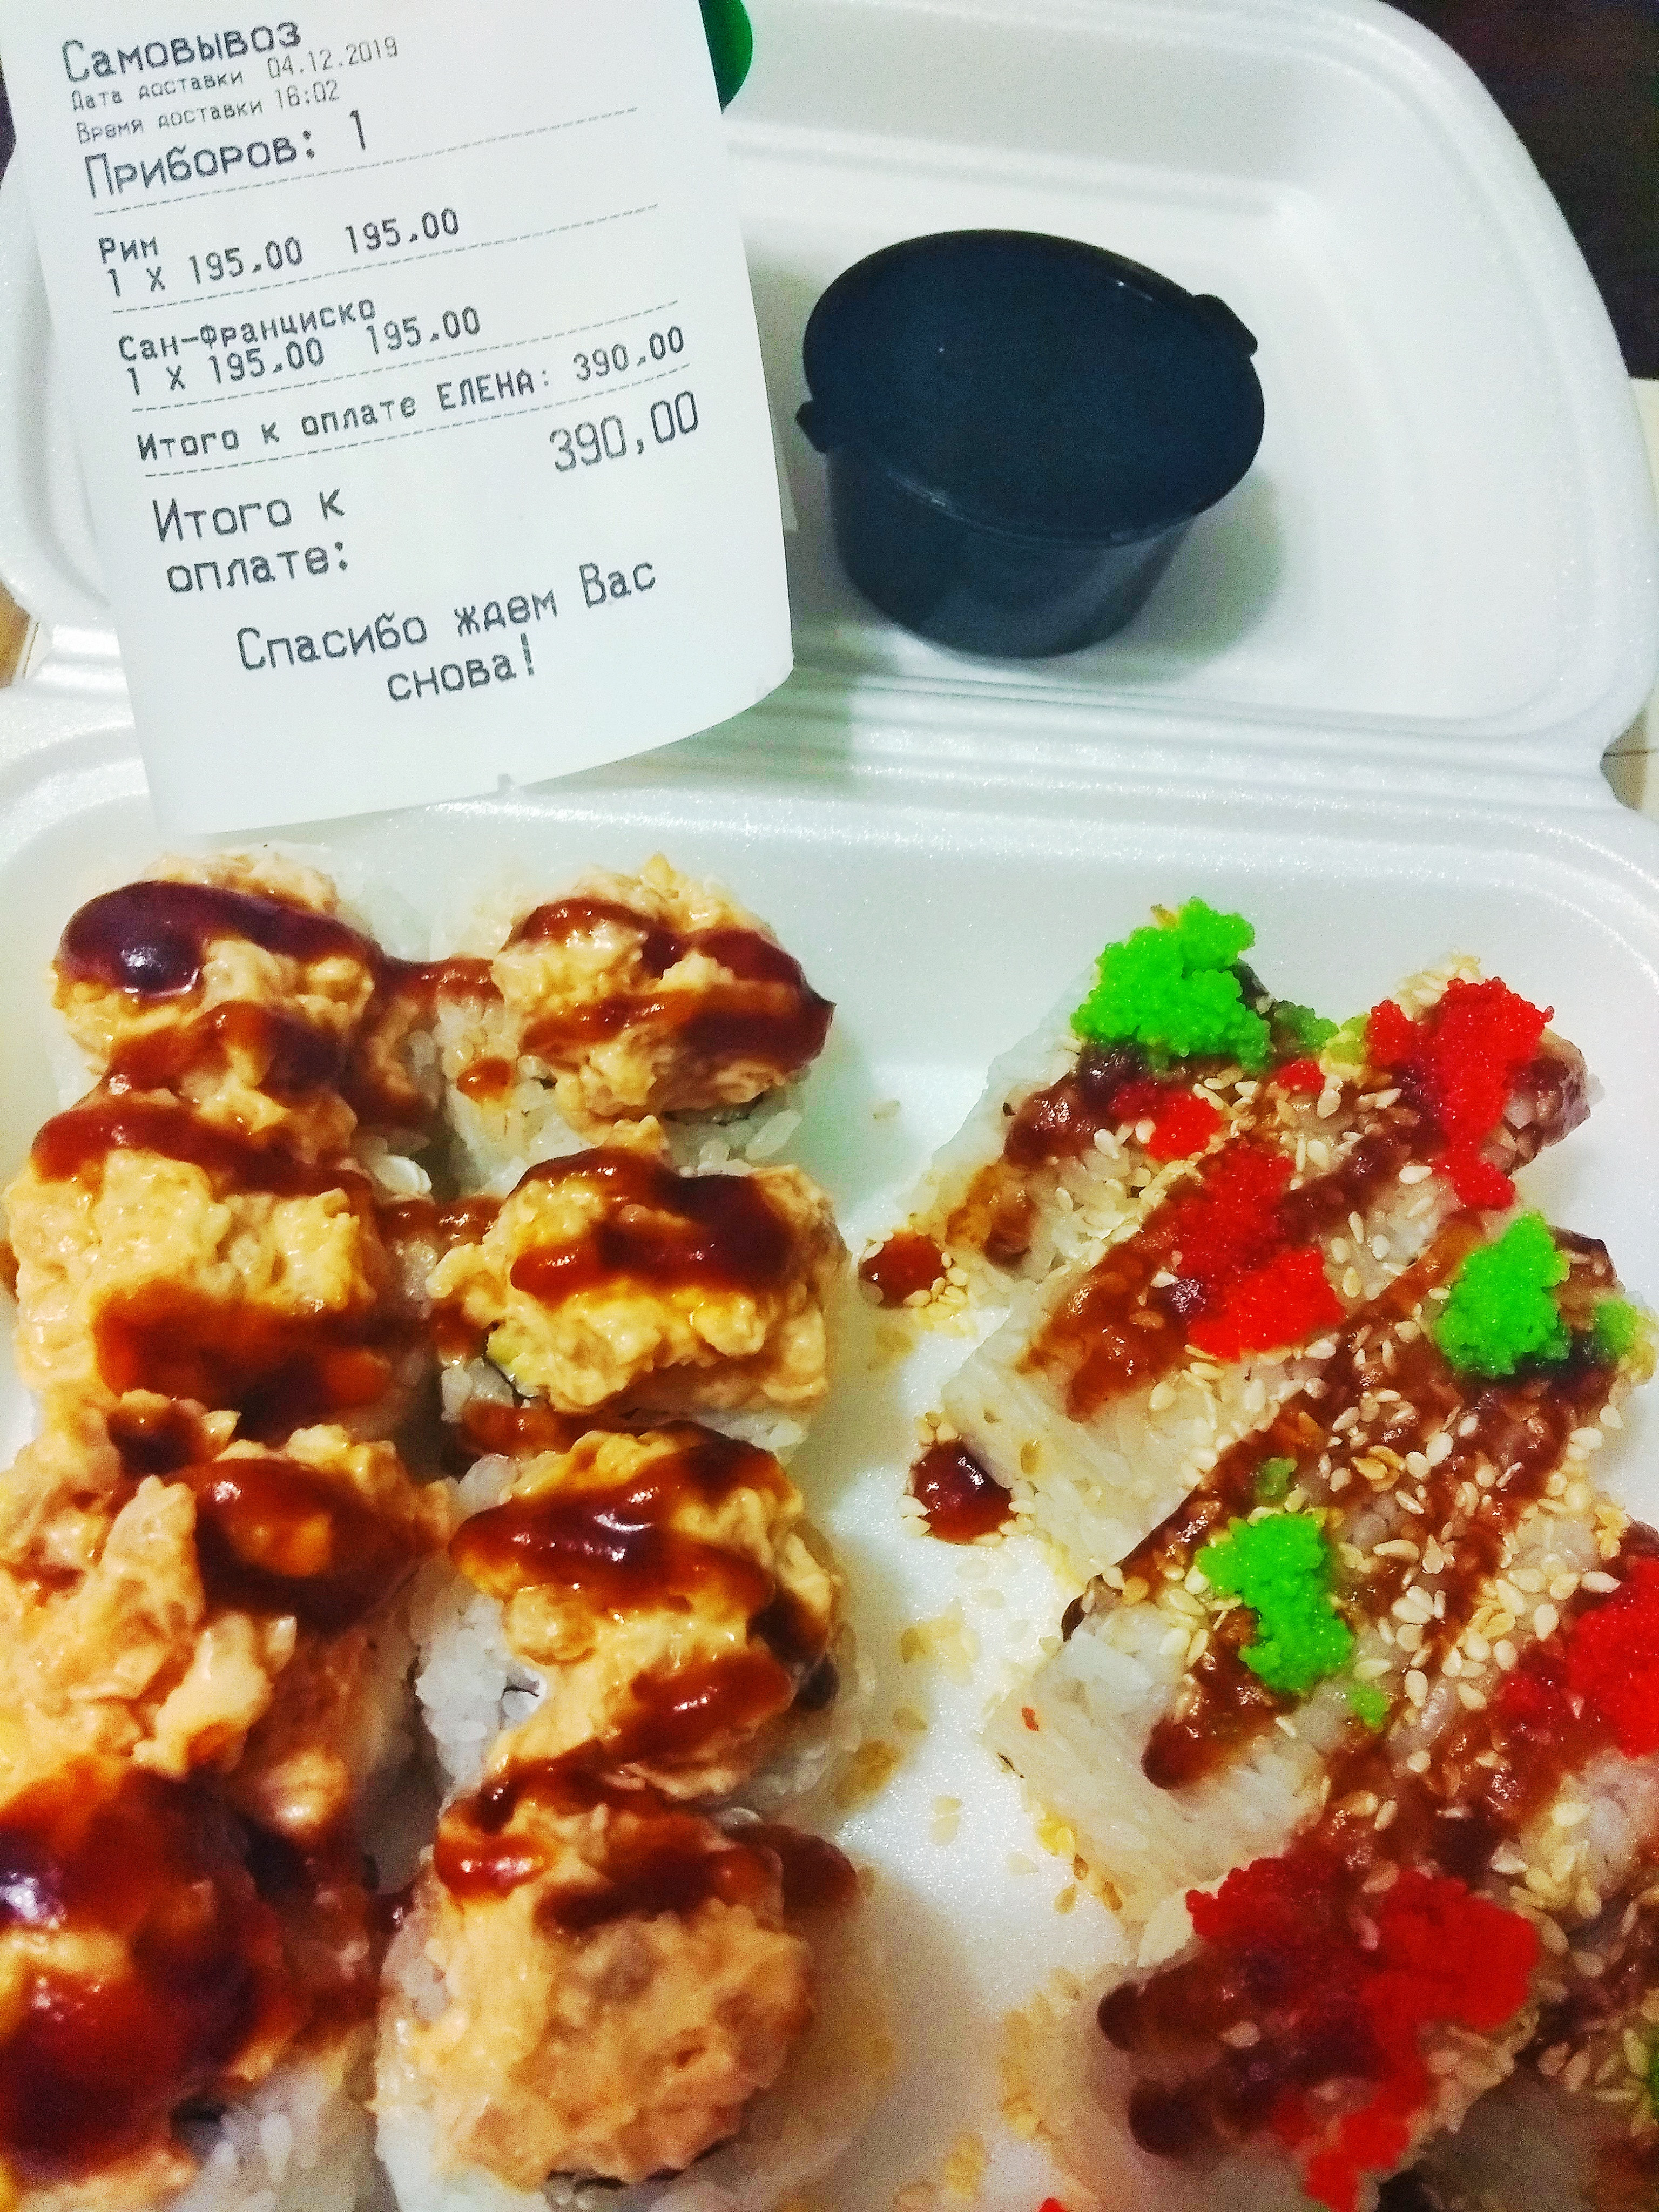 Фуджи суши в самаре с доставкой бесплатно заказать фото 23